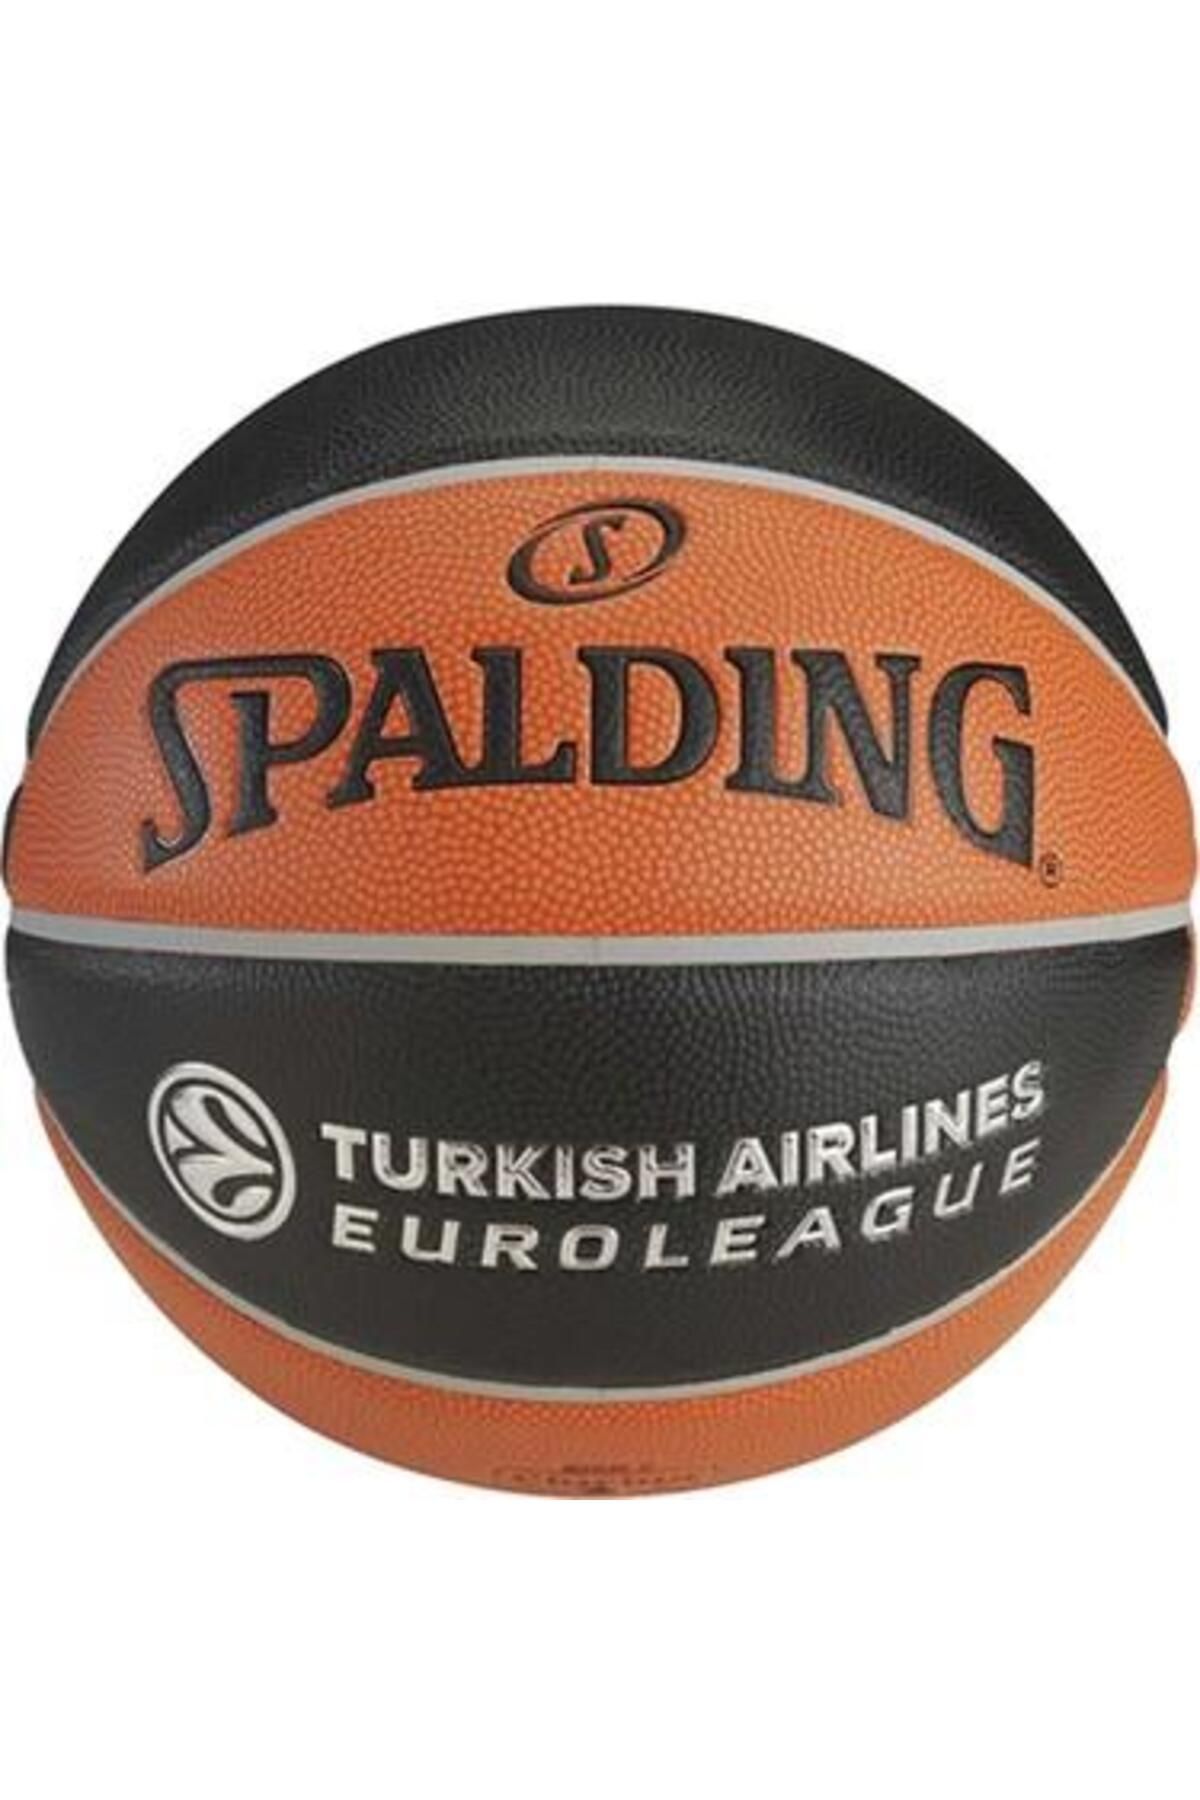 Spalding Spaldıng Basketbol Topu Euroleague Pro No:71 74538Z TF-1000/74-538Z